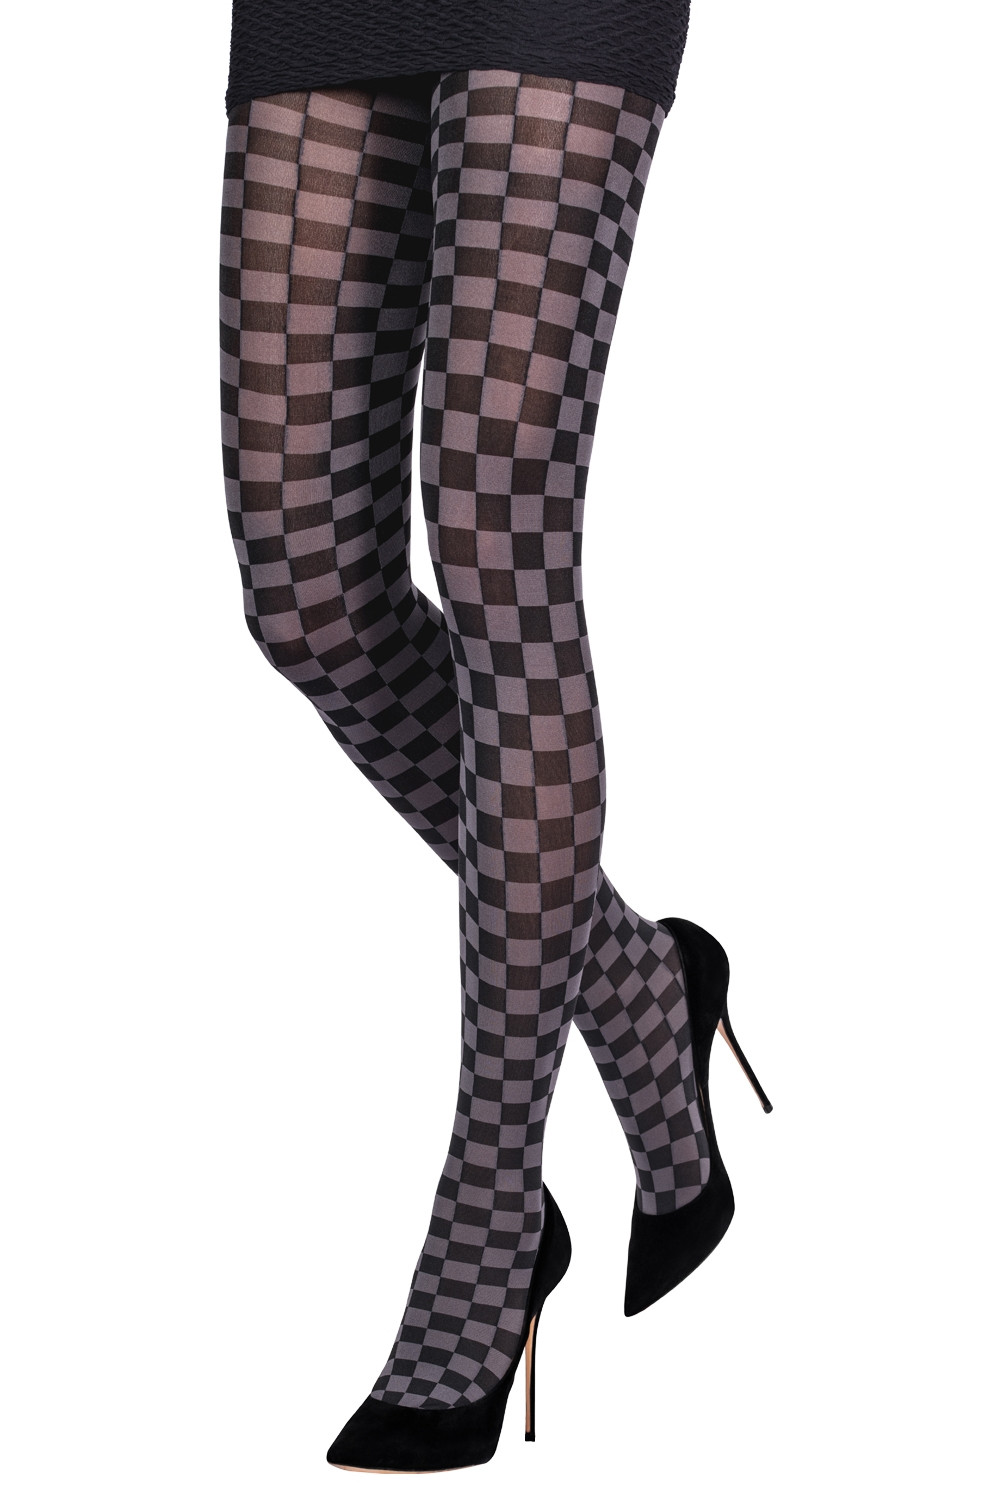 Women's Black & White Checkered Pantyhose